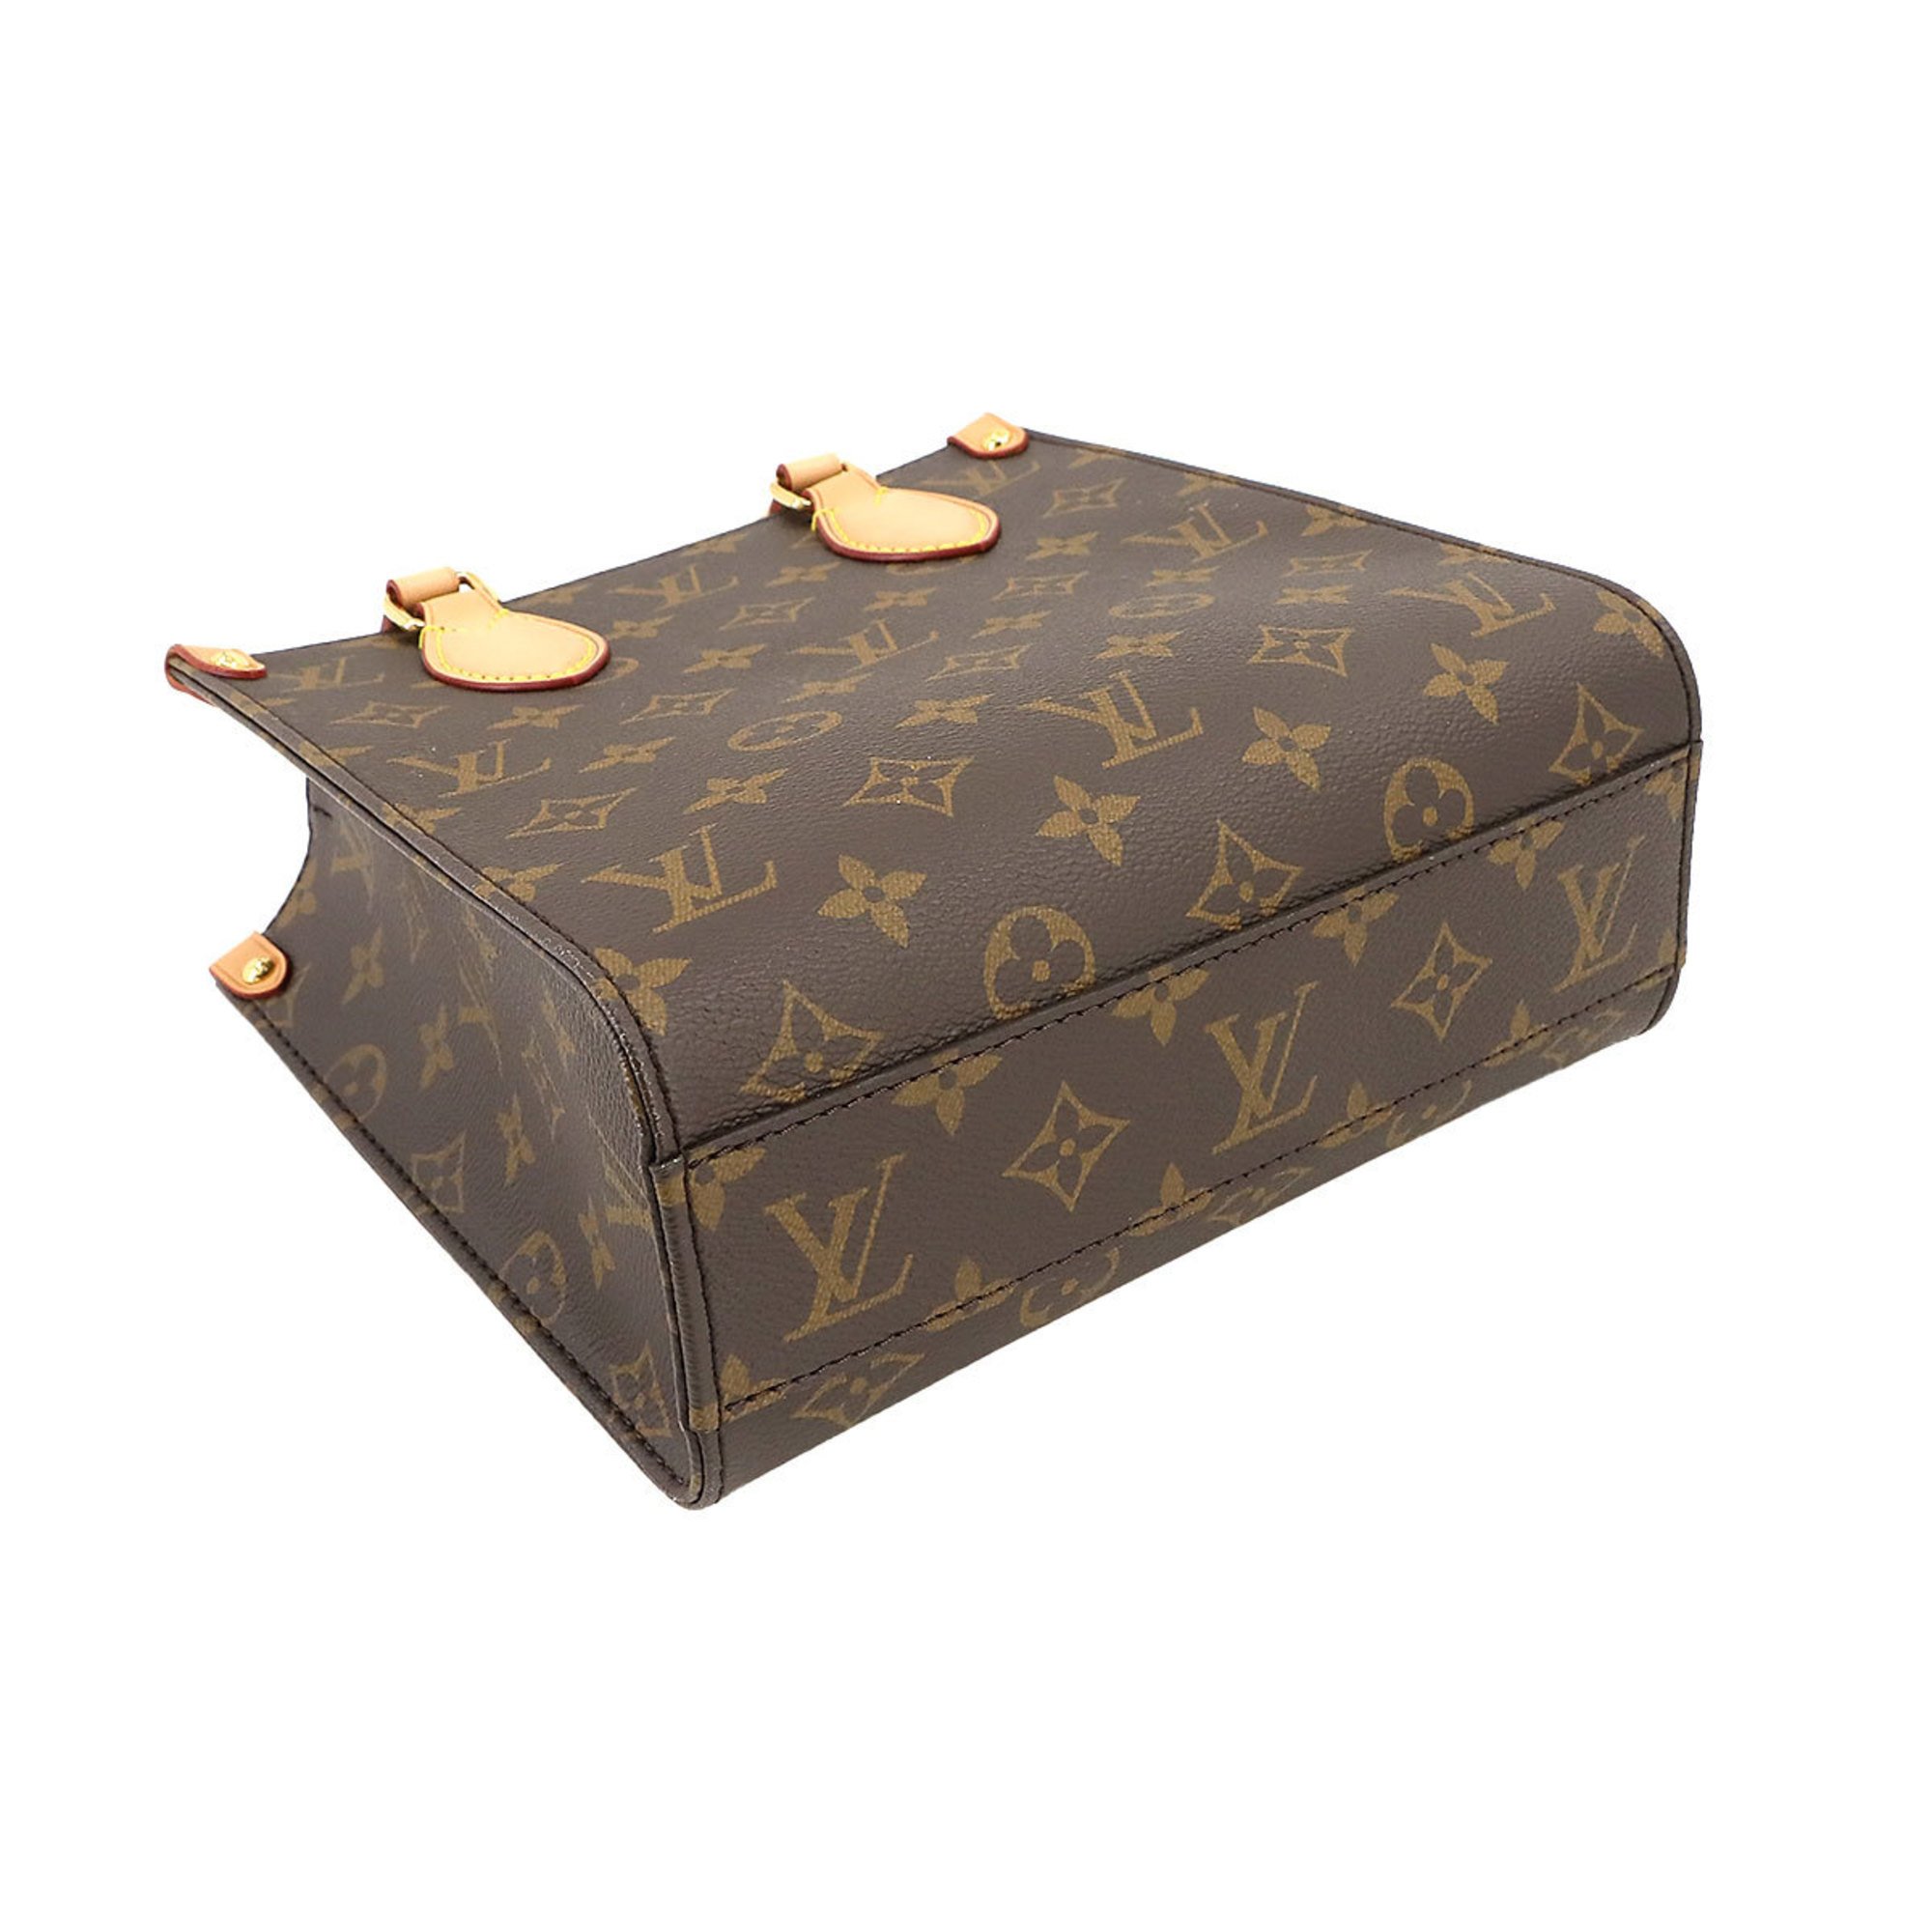 Louis Vuitton Monogram Sac Plat BB 2way Hand Shoulder Bag Brown M46265 RFID